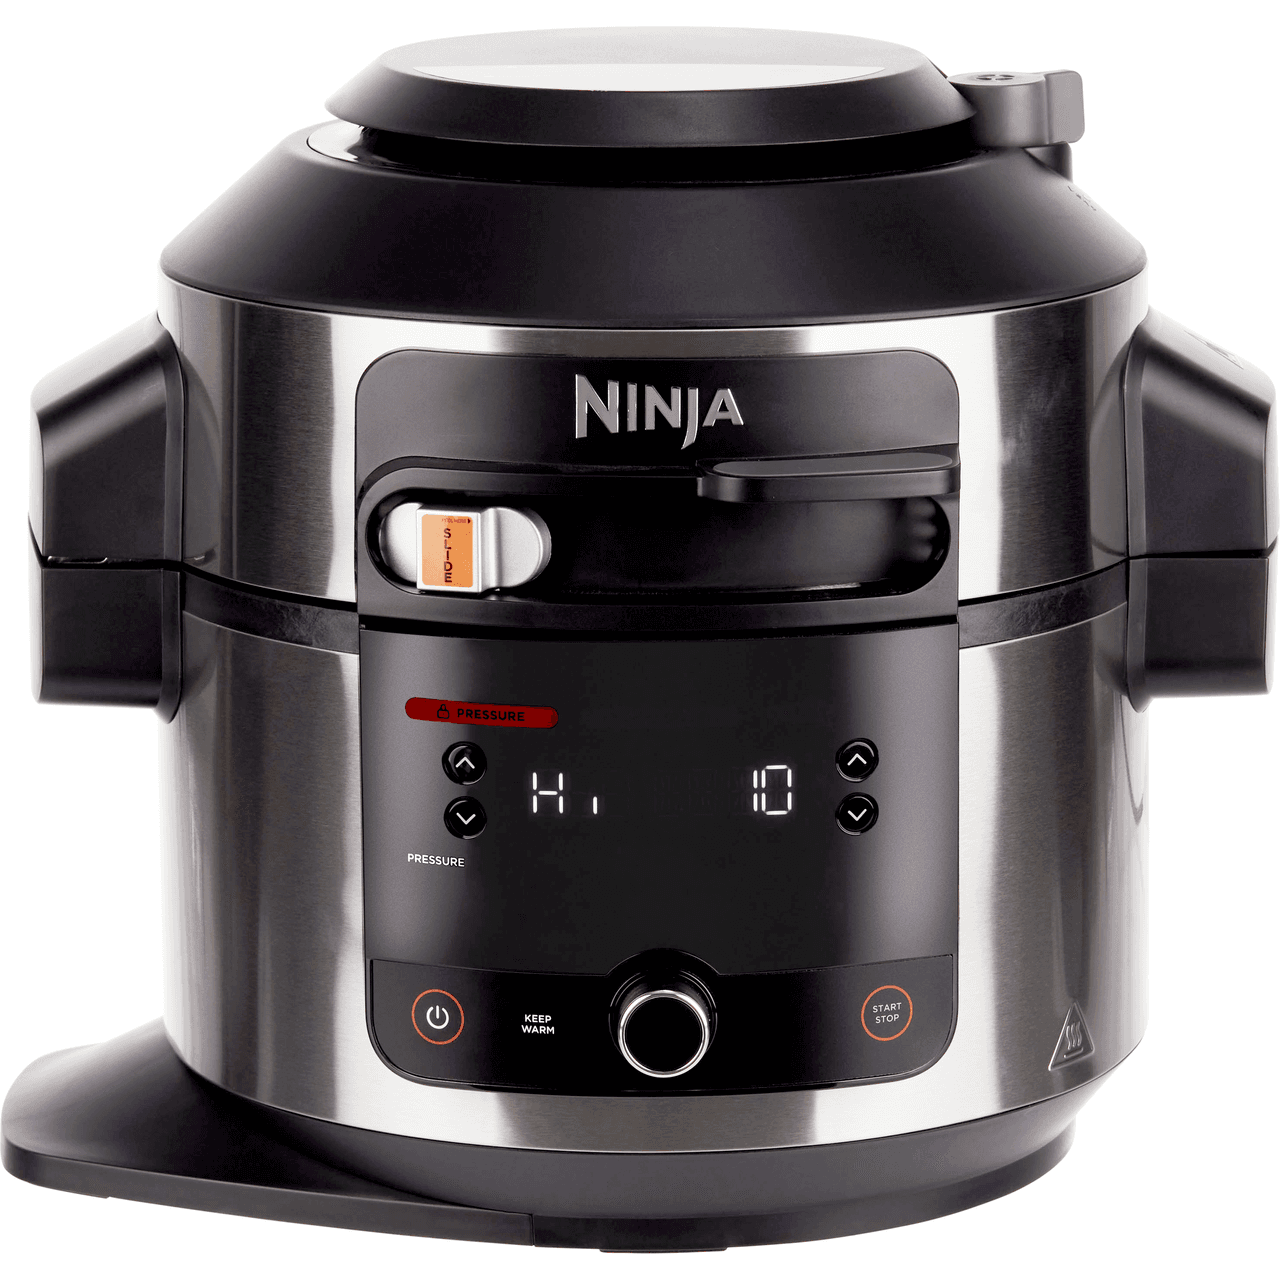 OL550UK, Ninja Multi Cooker, 6L